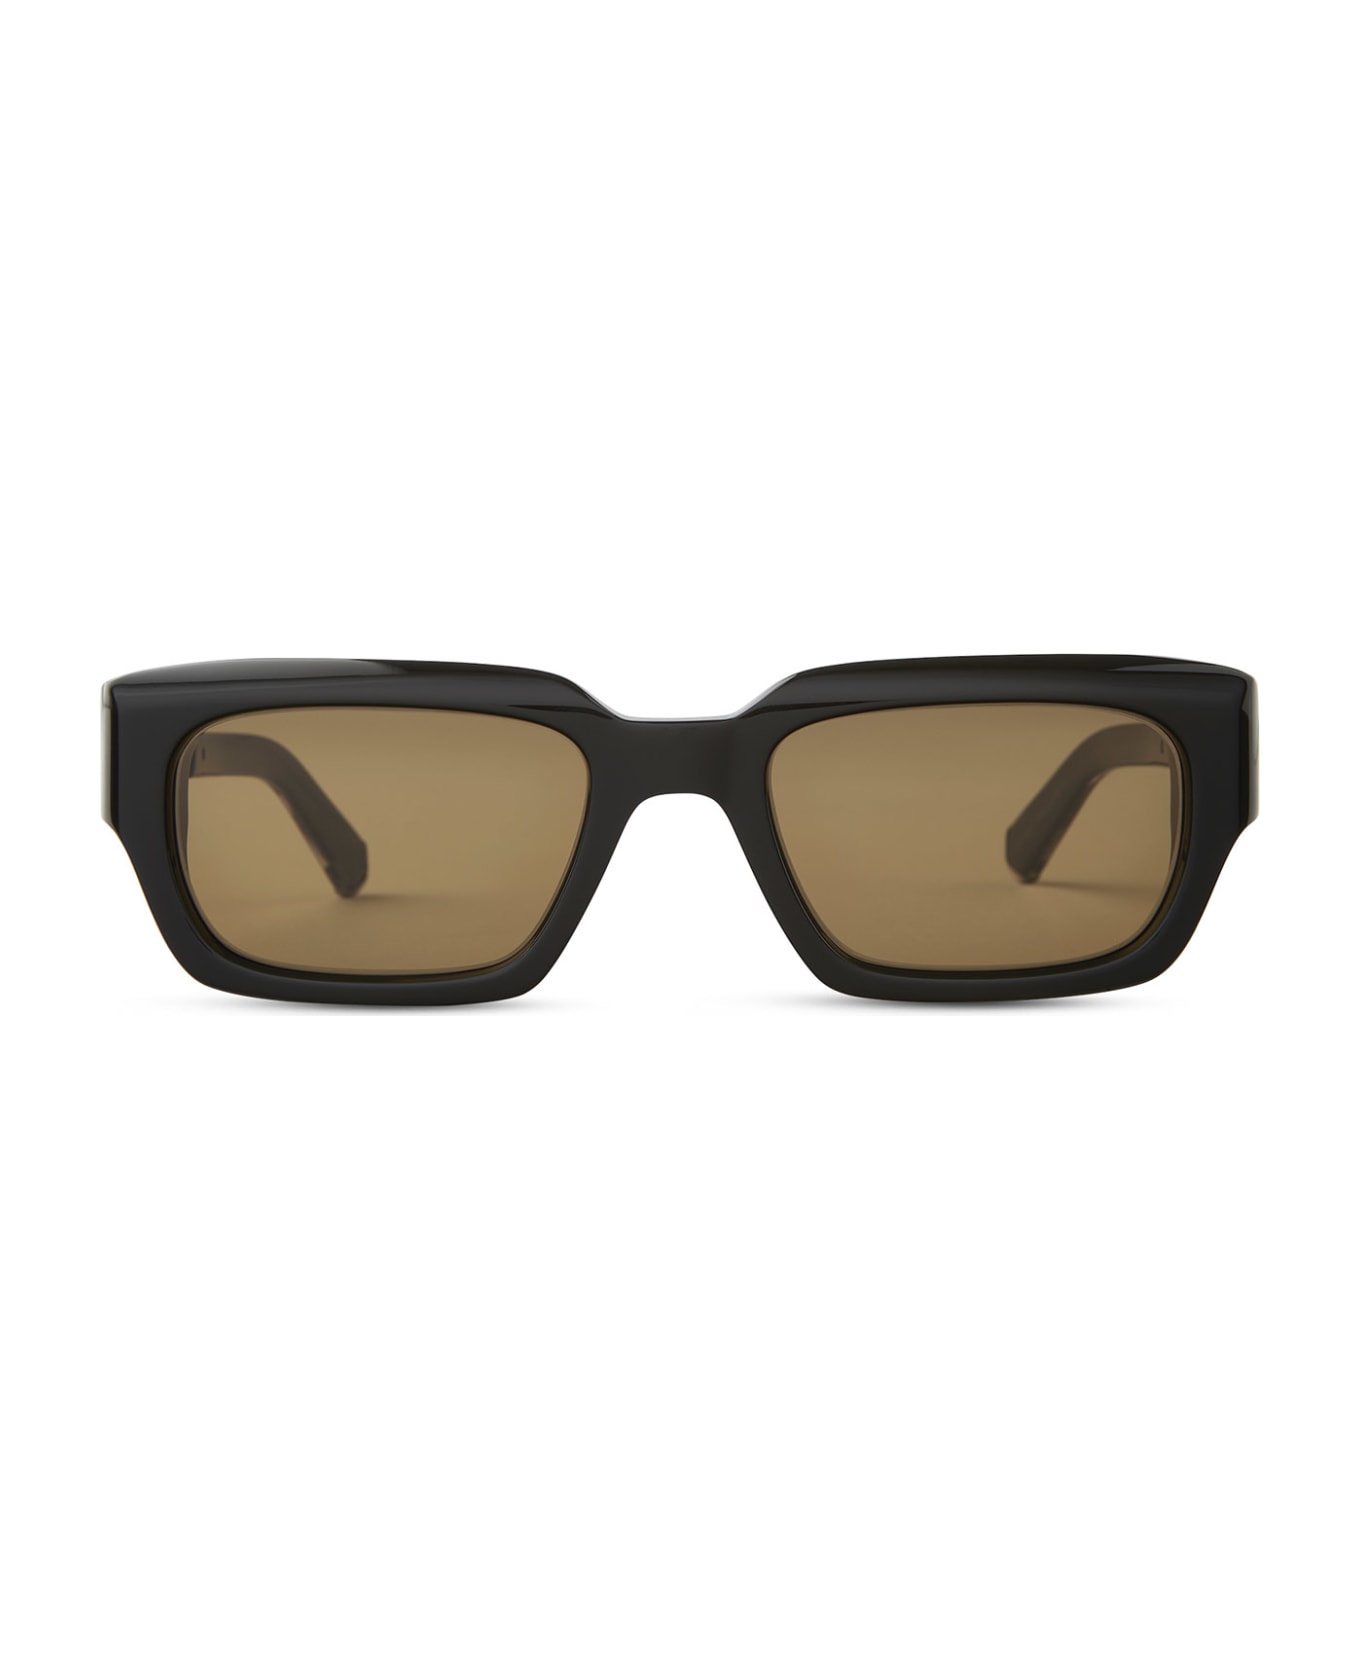 Mr. Leight Maverick S Black-pewter Sunglasses -  Black-Pewter サングラス